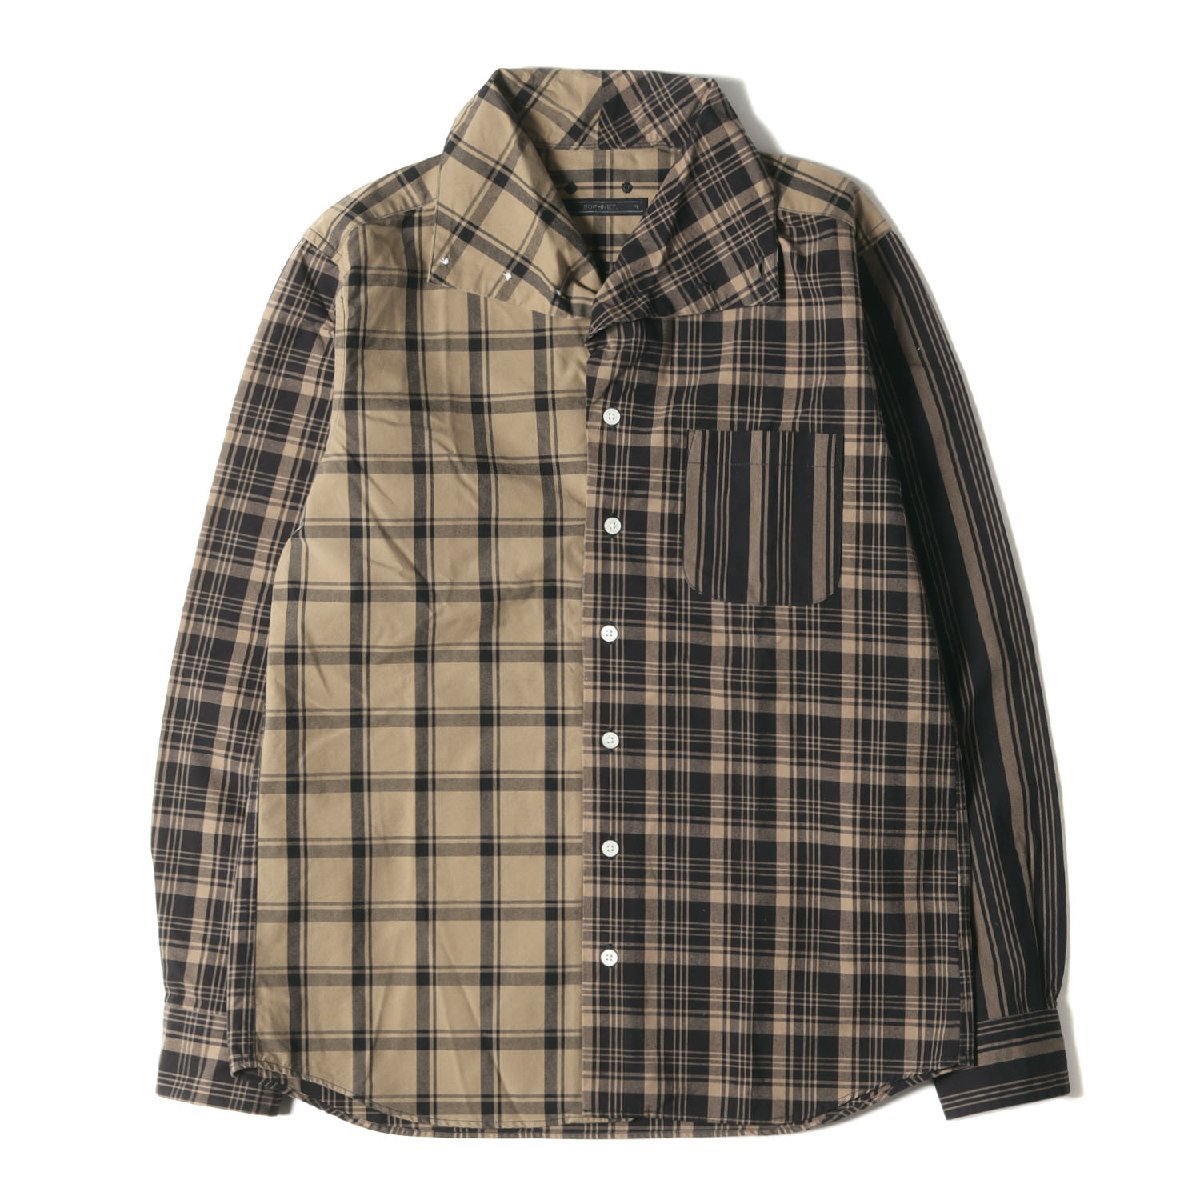 美品 SOPHNET ソフネット シャツ サイズ:M 20AW クレイジーパターン チェック 長袖シャツ ベージュ ブラック トップス カジュアルシャツ